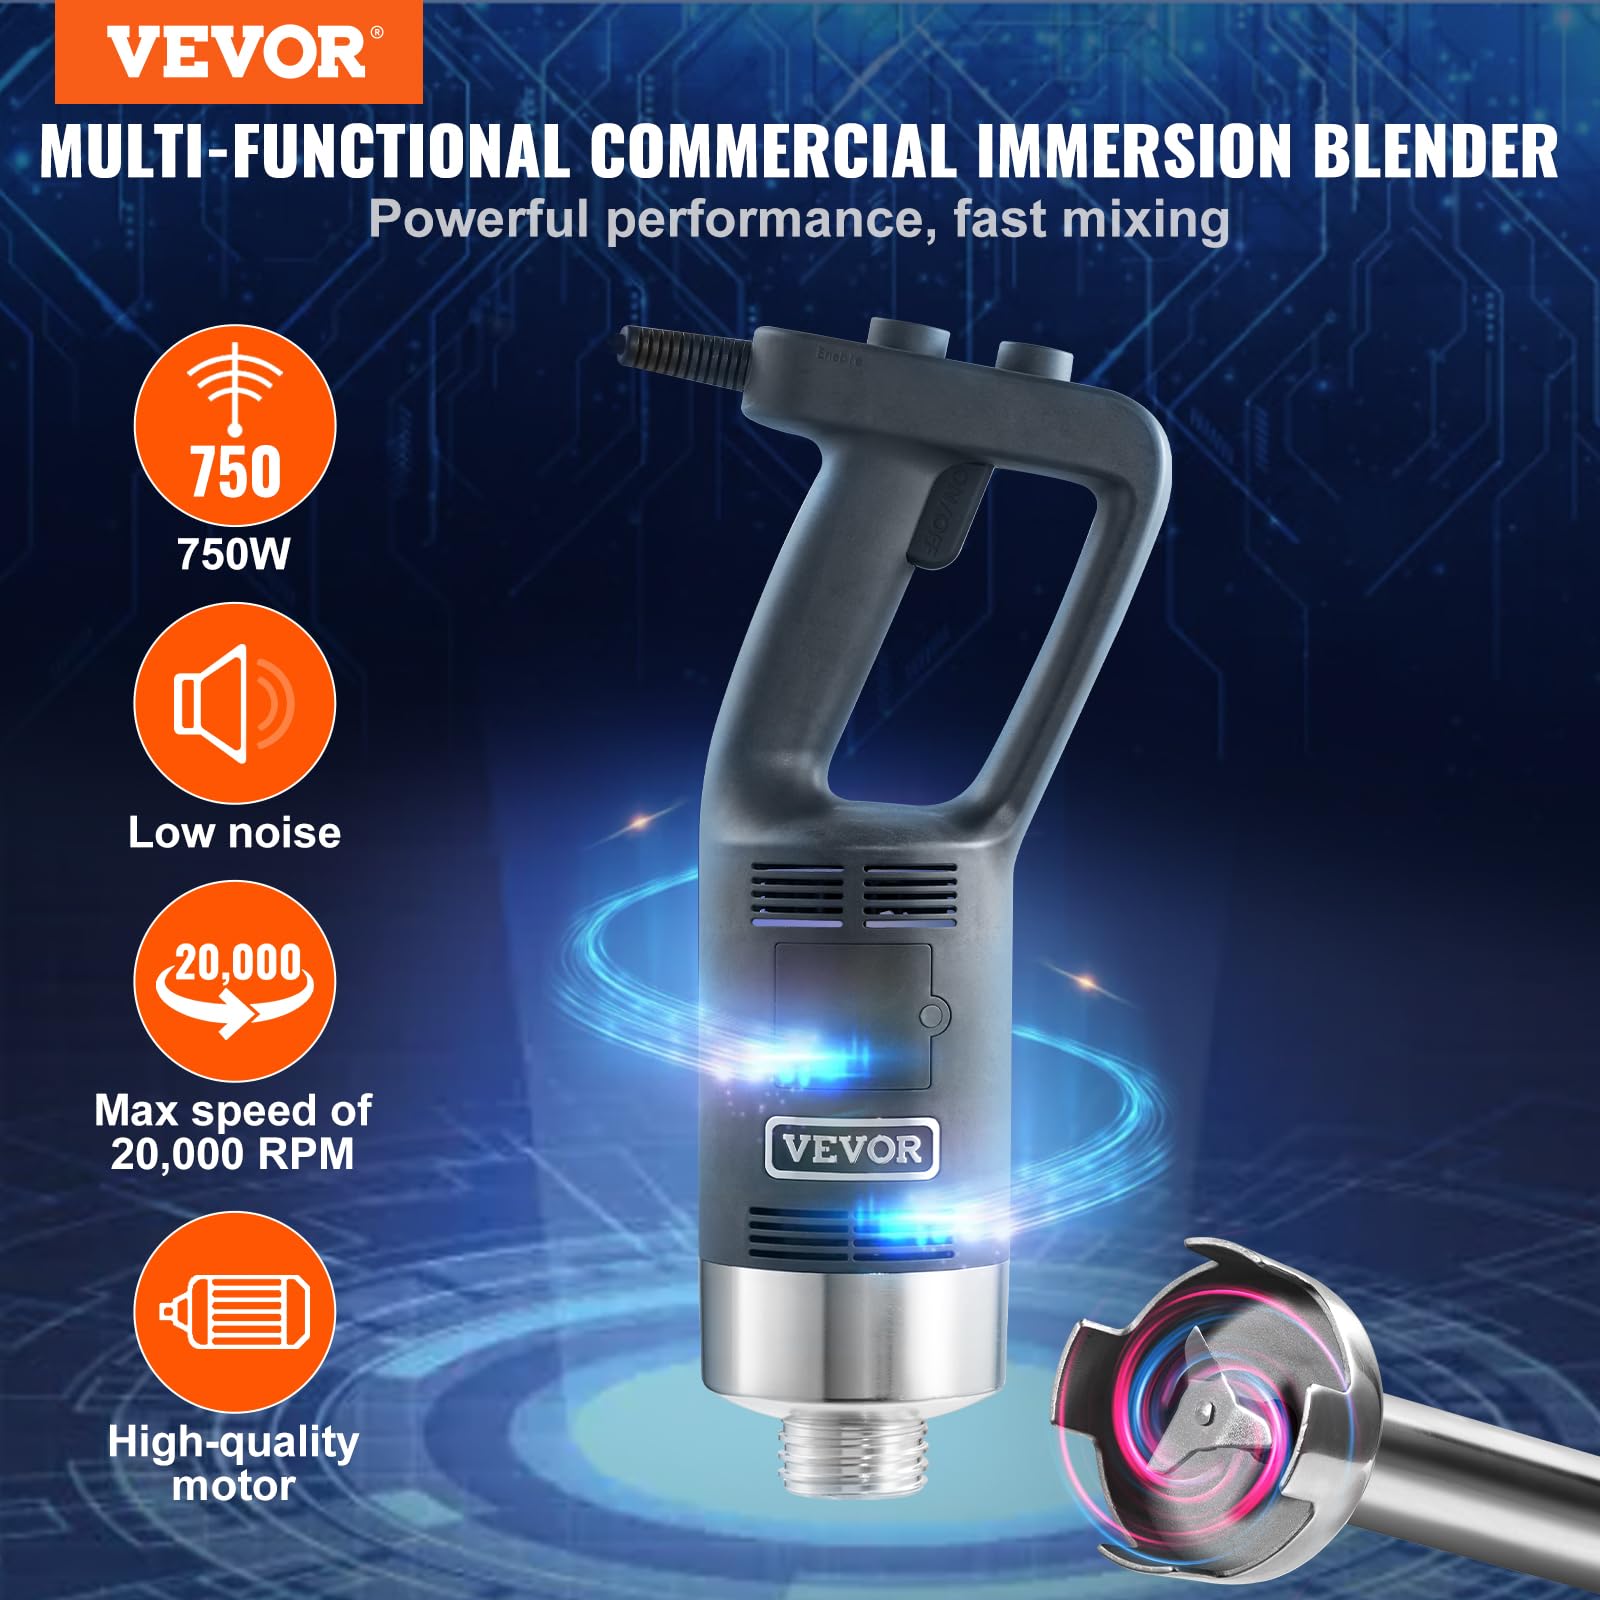 VEVOR Commercial Immersion Blender, 750W 12